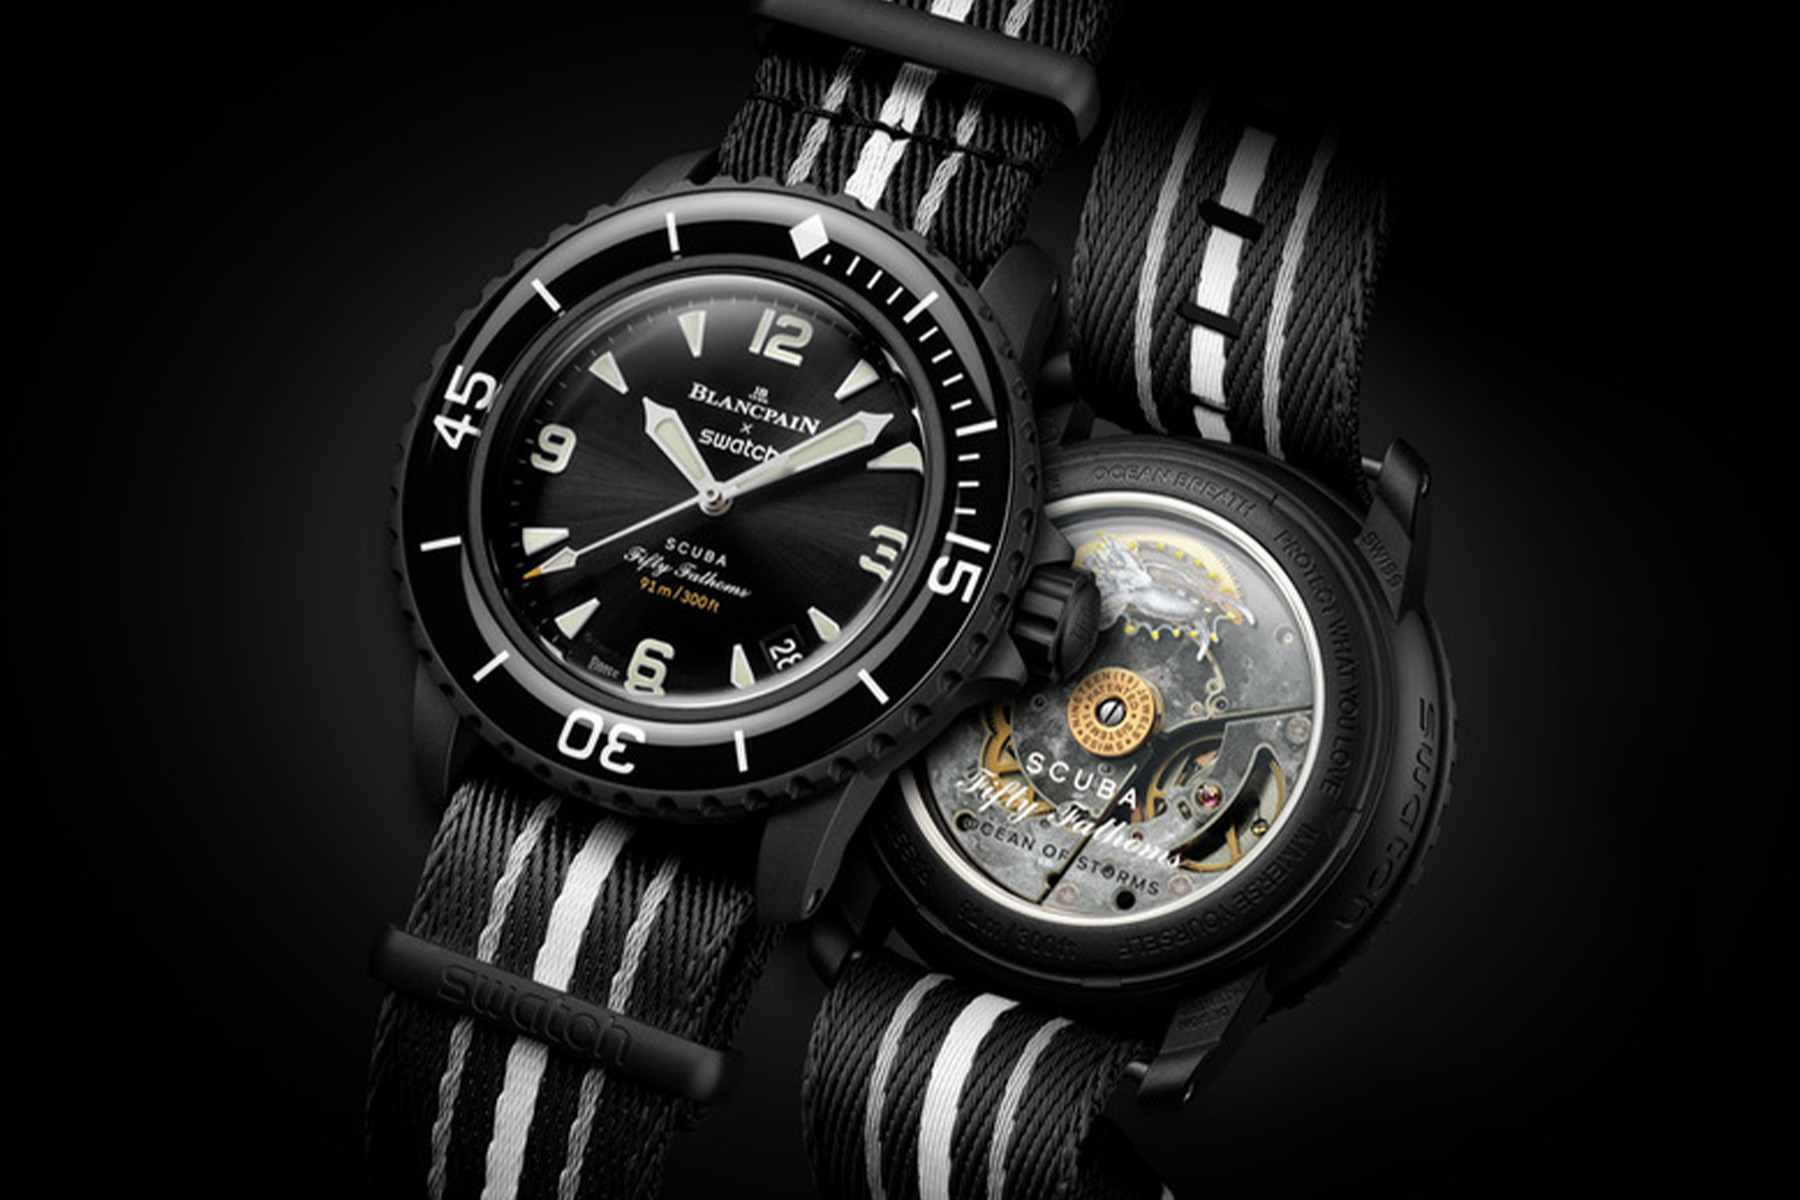 高級腕時計ブランド、Blancpain(ブランパン)と Swatch